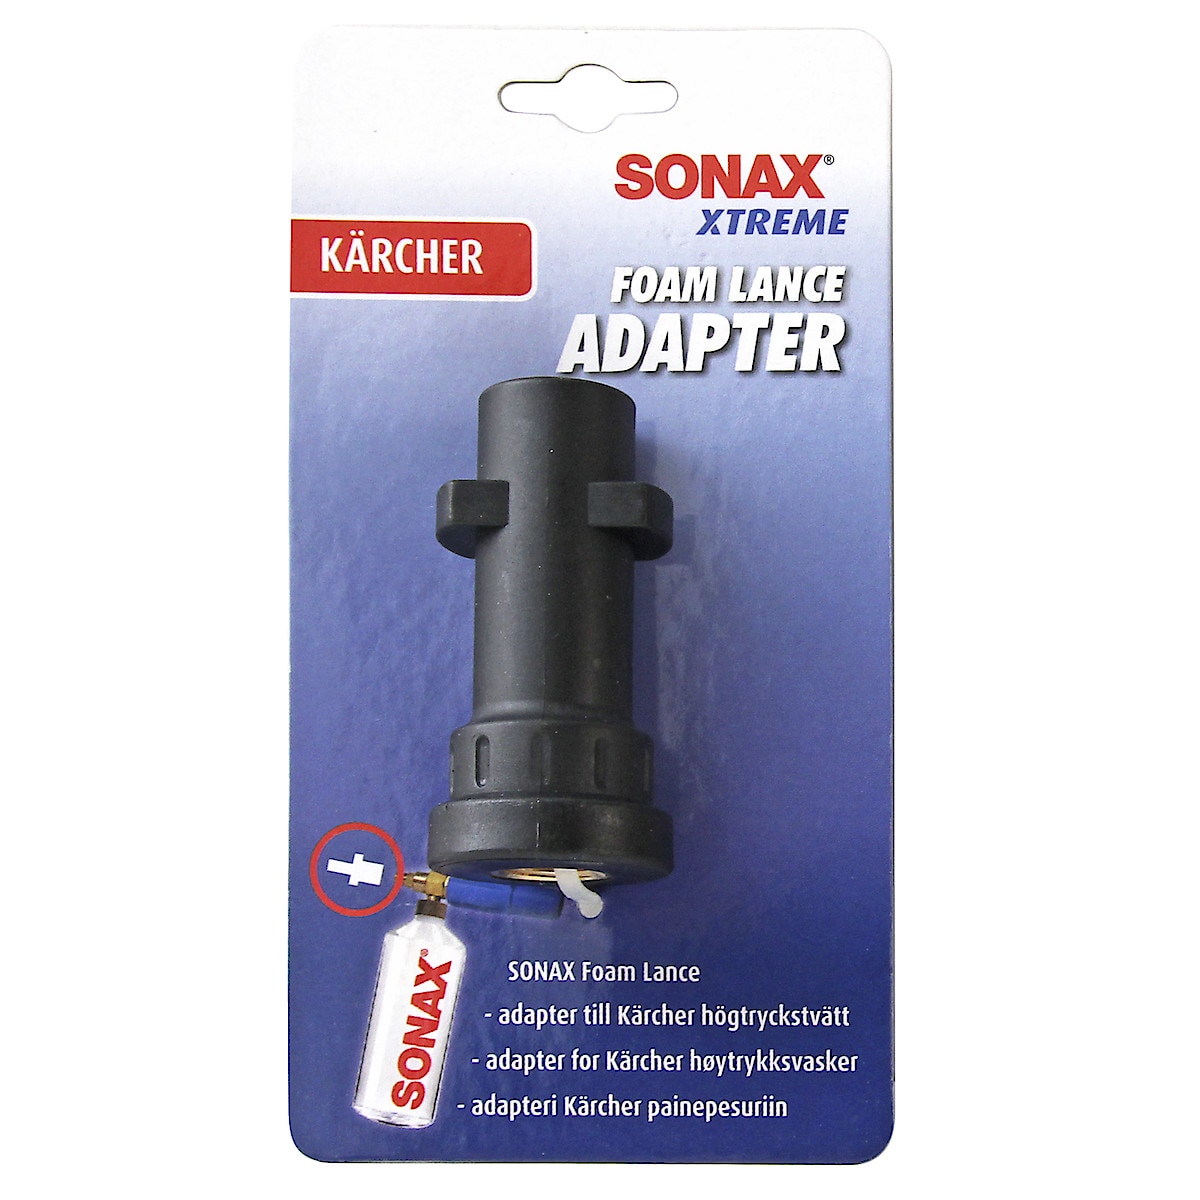 Sonax Foam Lance Adapter till Kärcher högtryckstvätt